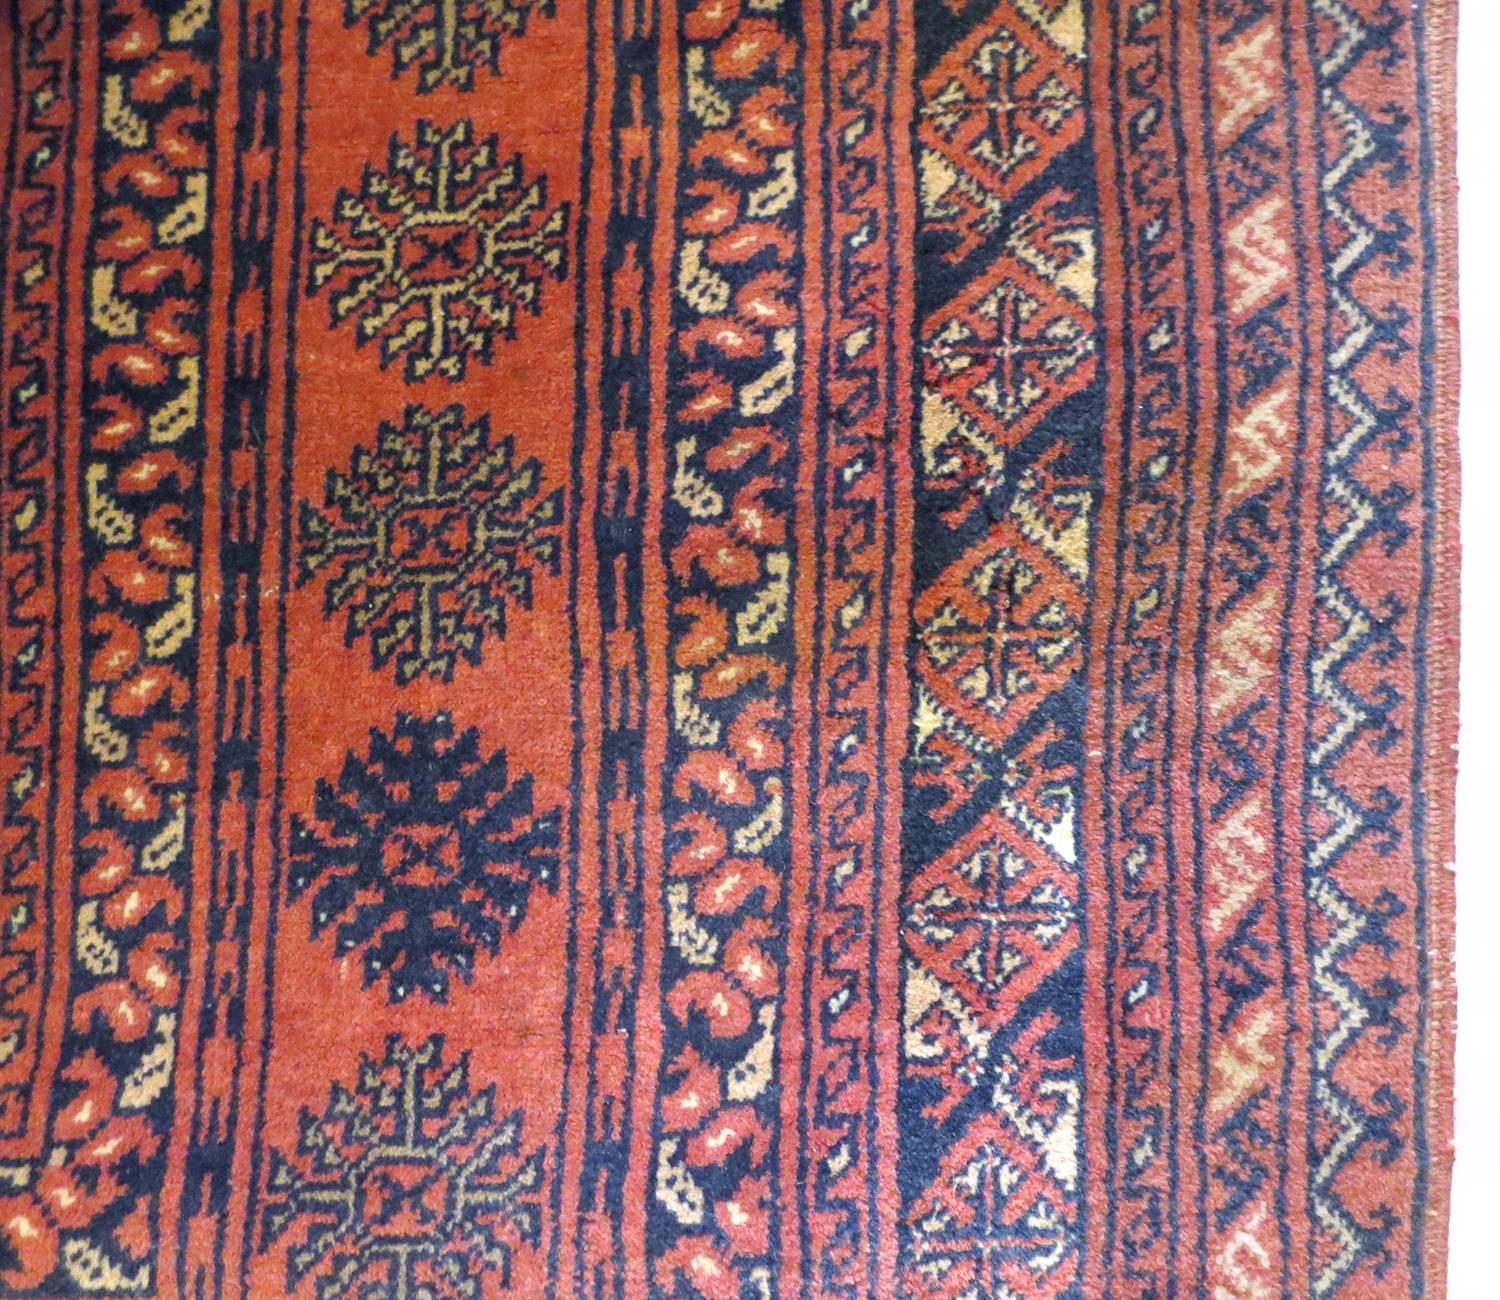 Dies ist ein alter afghanischer Teppich, ca. 1970er Jahre. Es enthält ein schönes traditionelles Herati-Muster in Saphirrot, Schwarz und Elfenbein. Um das Feld herum befinden sich schmalere Schutzleisten, die alle mit dekorativen geometrischen